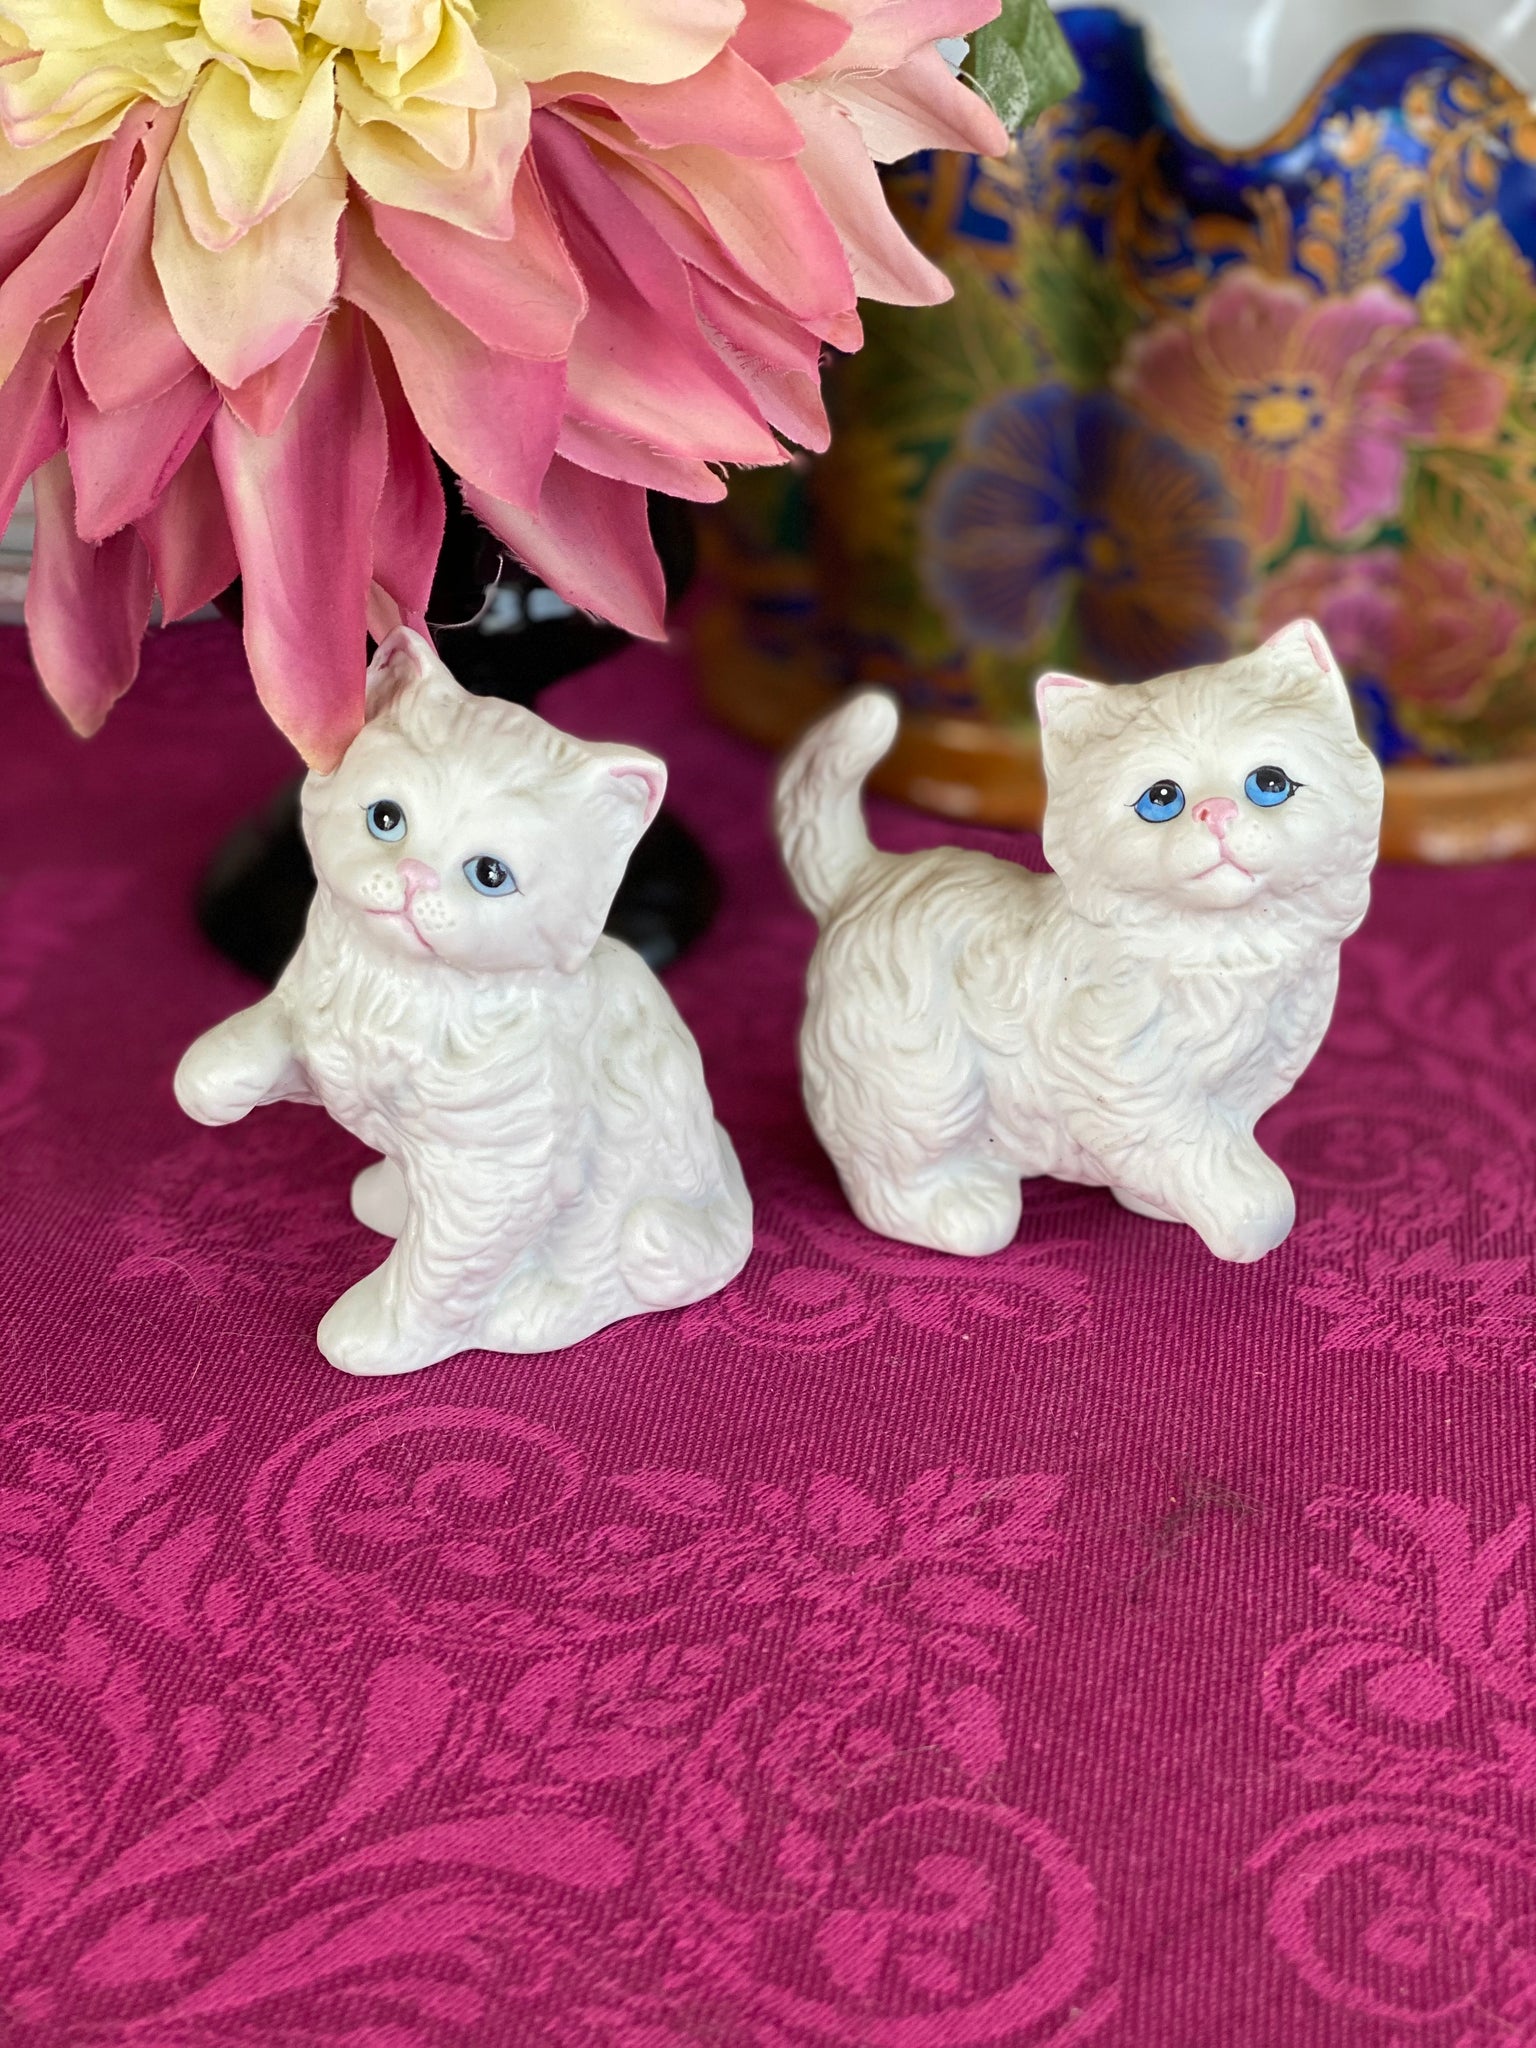 Vintage Japanese Cat Figurines